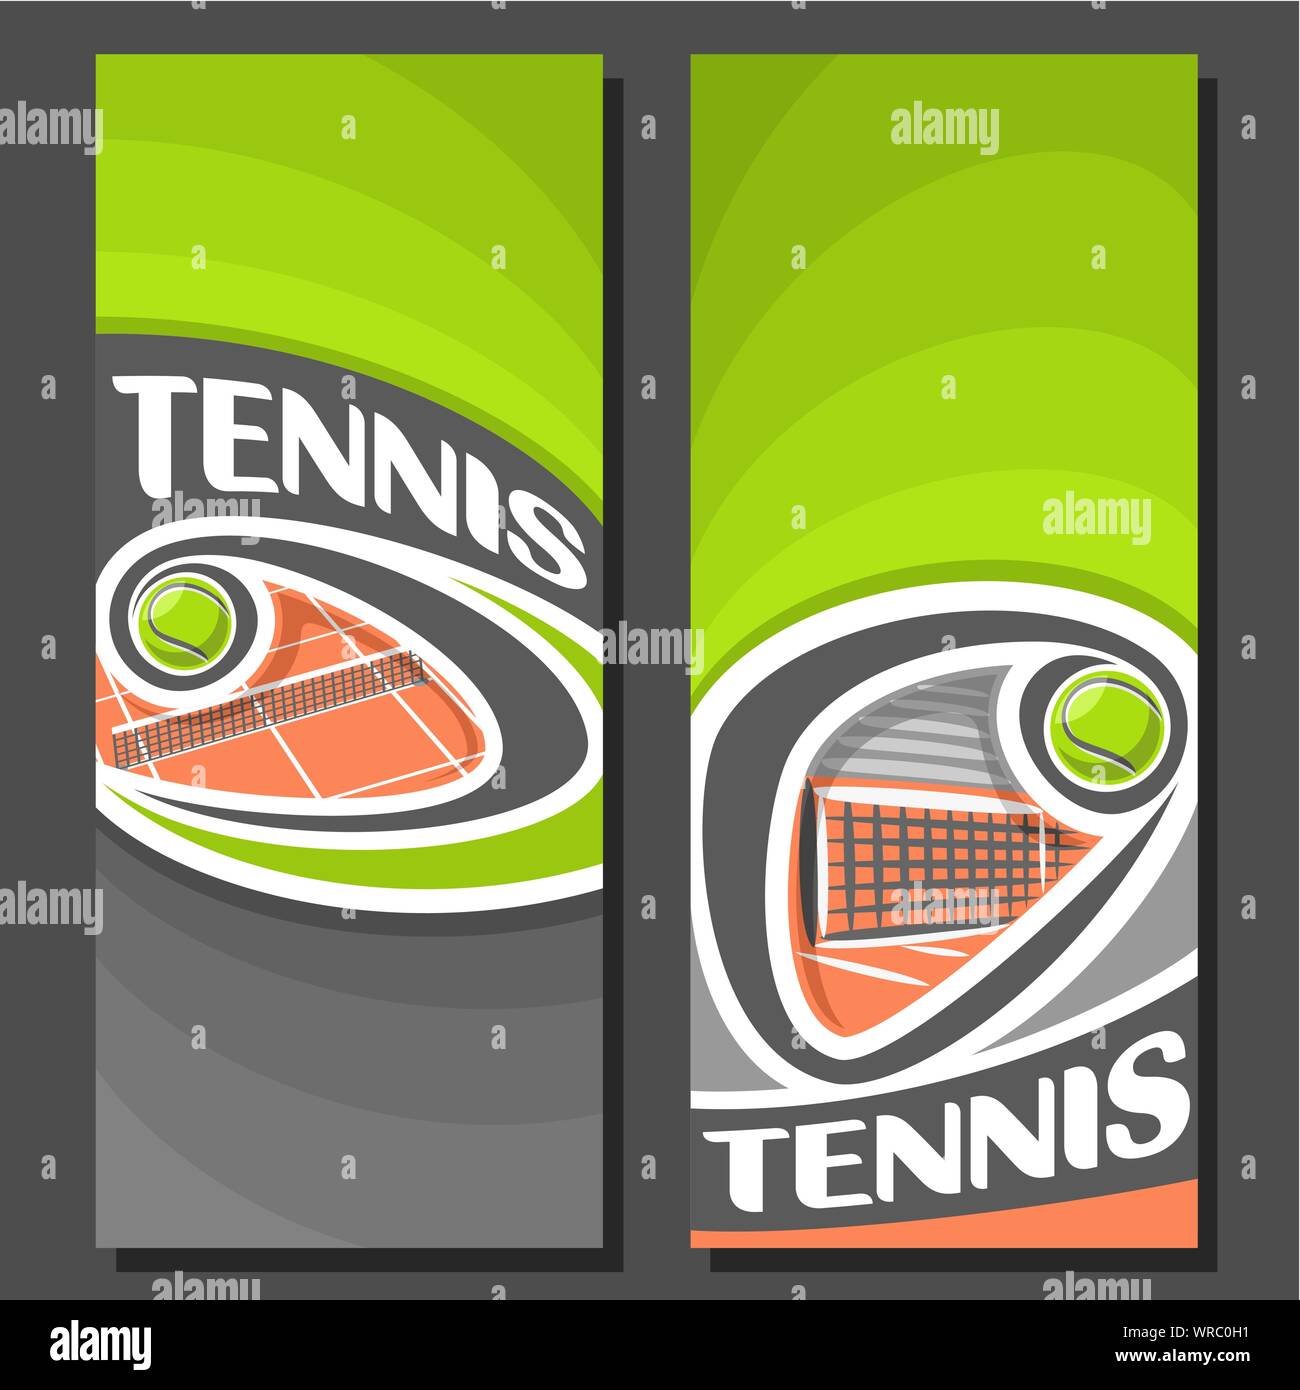 Vettore banner verticale per il Tennis: 2 formati di testo sul tema del tennis, arancione clay court con volare al di sopra net sfera su sfondo nero. Illustrazione Vettoriale